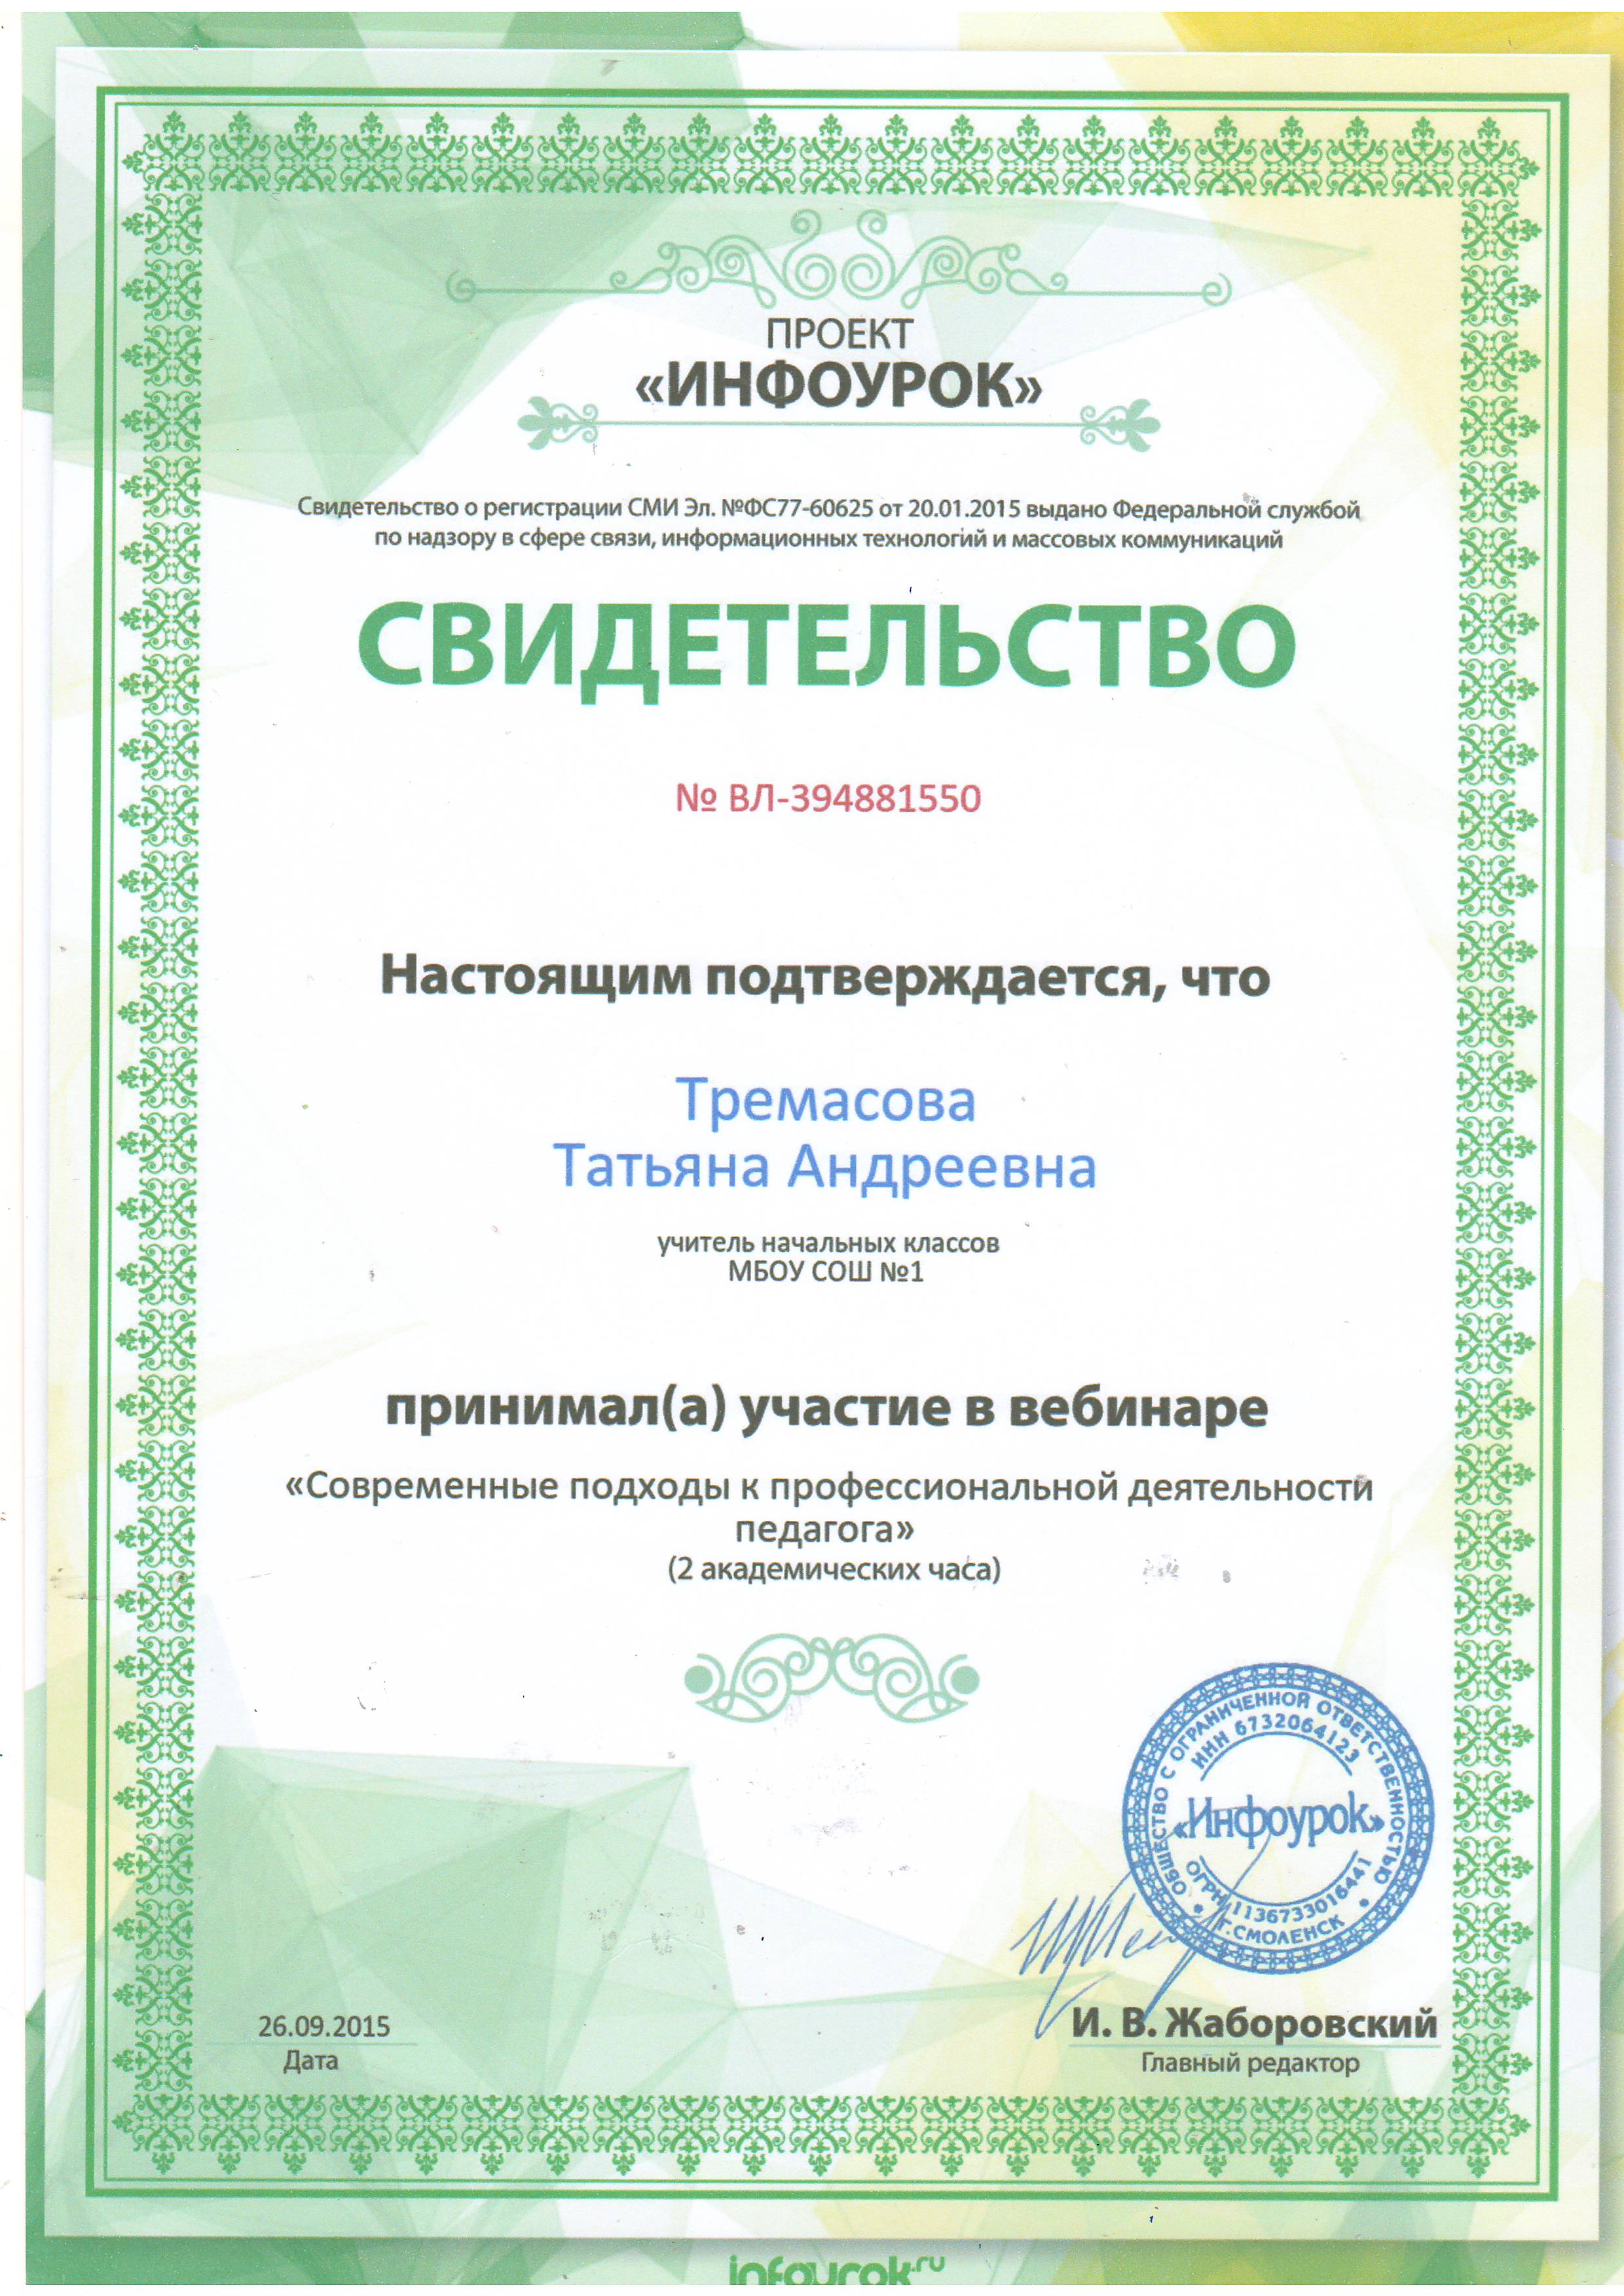 Infourok ru tests. Участие в вебинаре. Свидетельство воспитателю за участие в вебинаре. Сертификат о вебинаре для воспитателей. Сертификаты для воспитателей ДОУ О вебинаре.